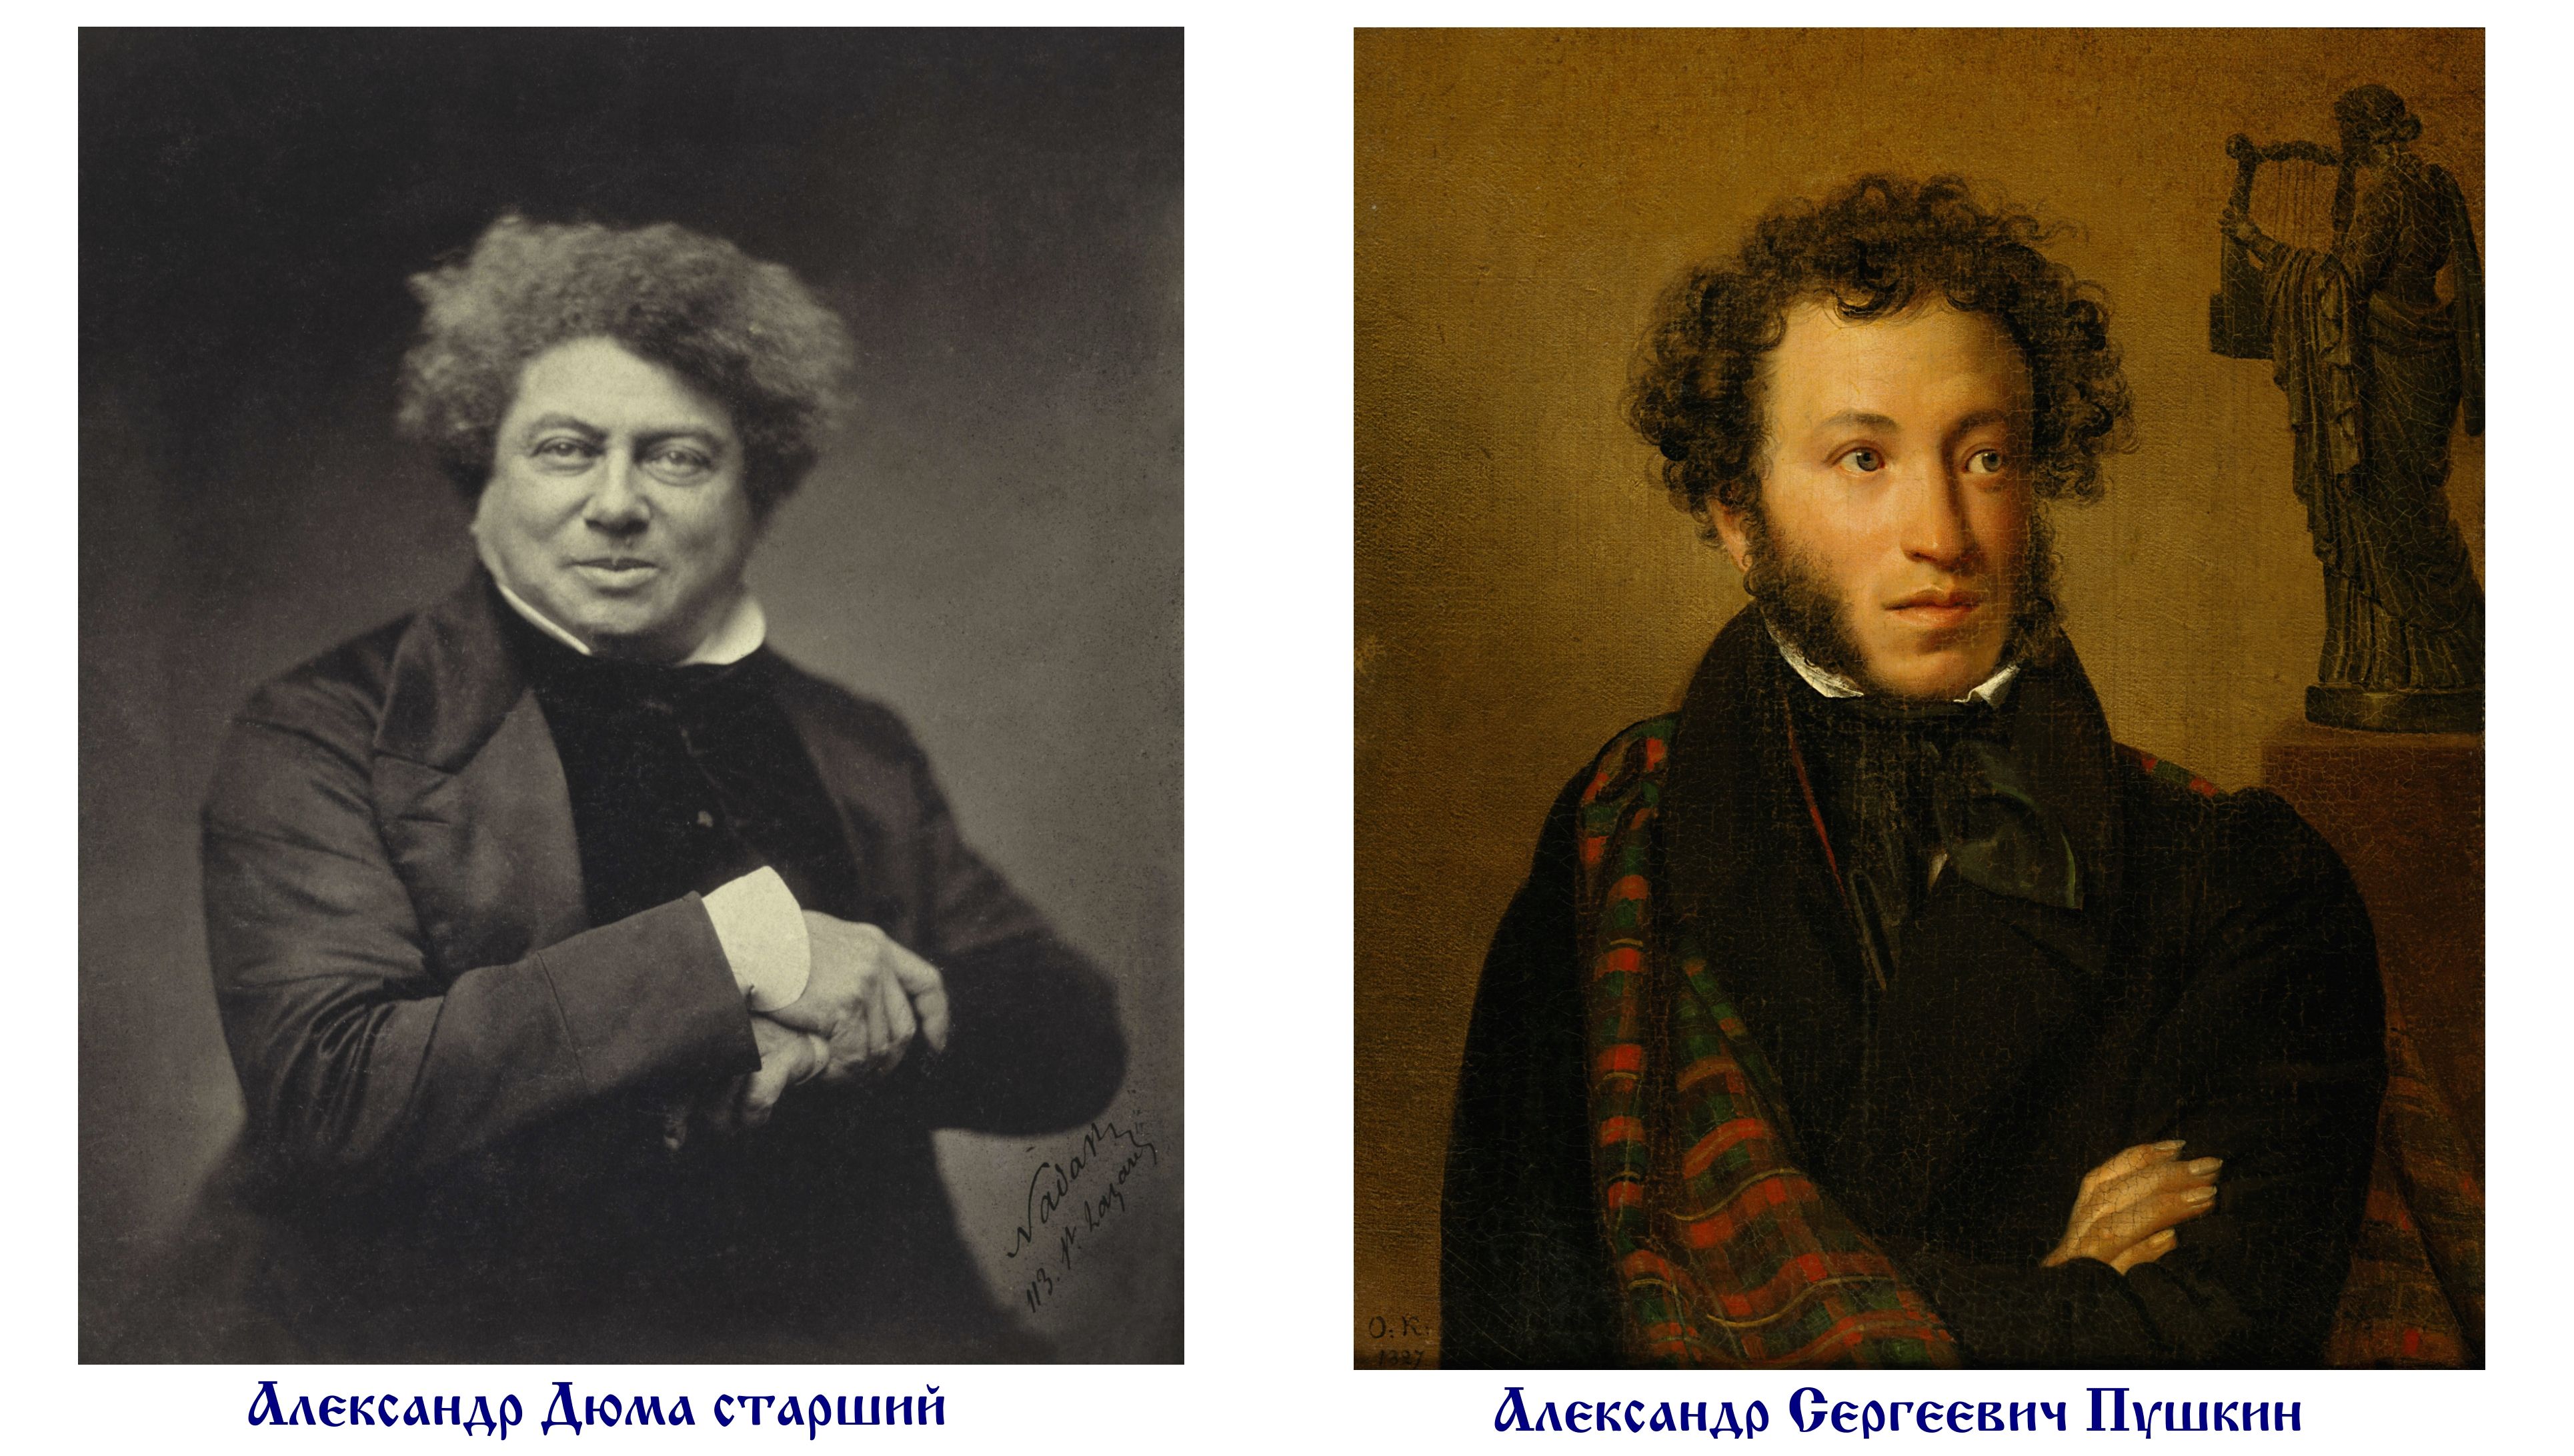 Сравнение пушкина и дюма. Не Пушкин. Дюма не опаздывают толькотнелюбимые женщины.